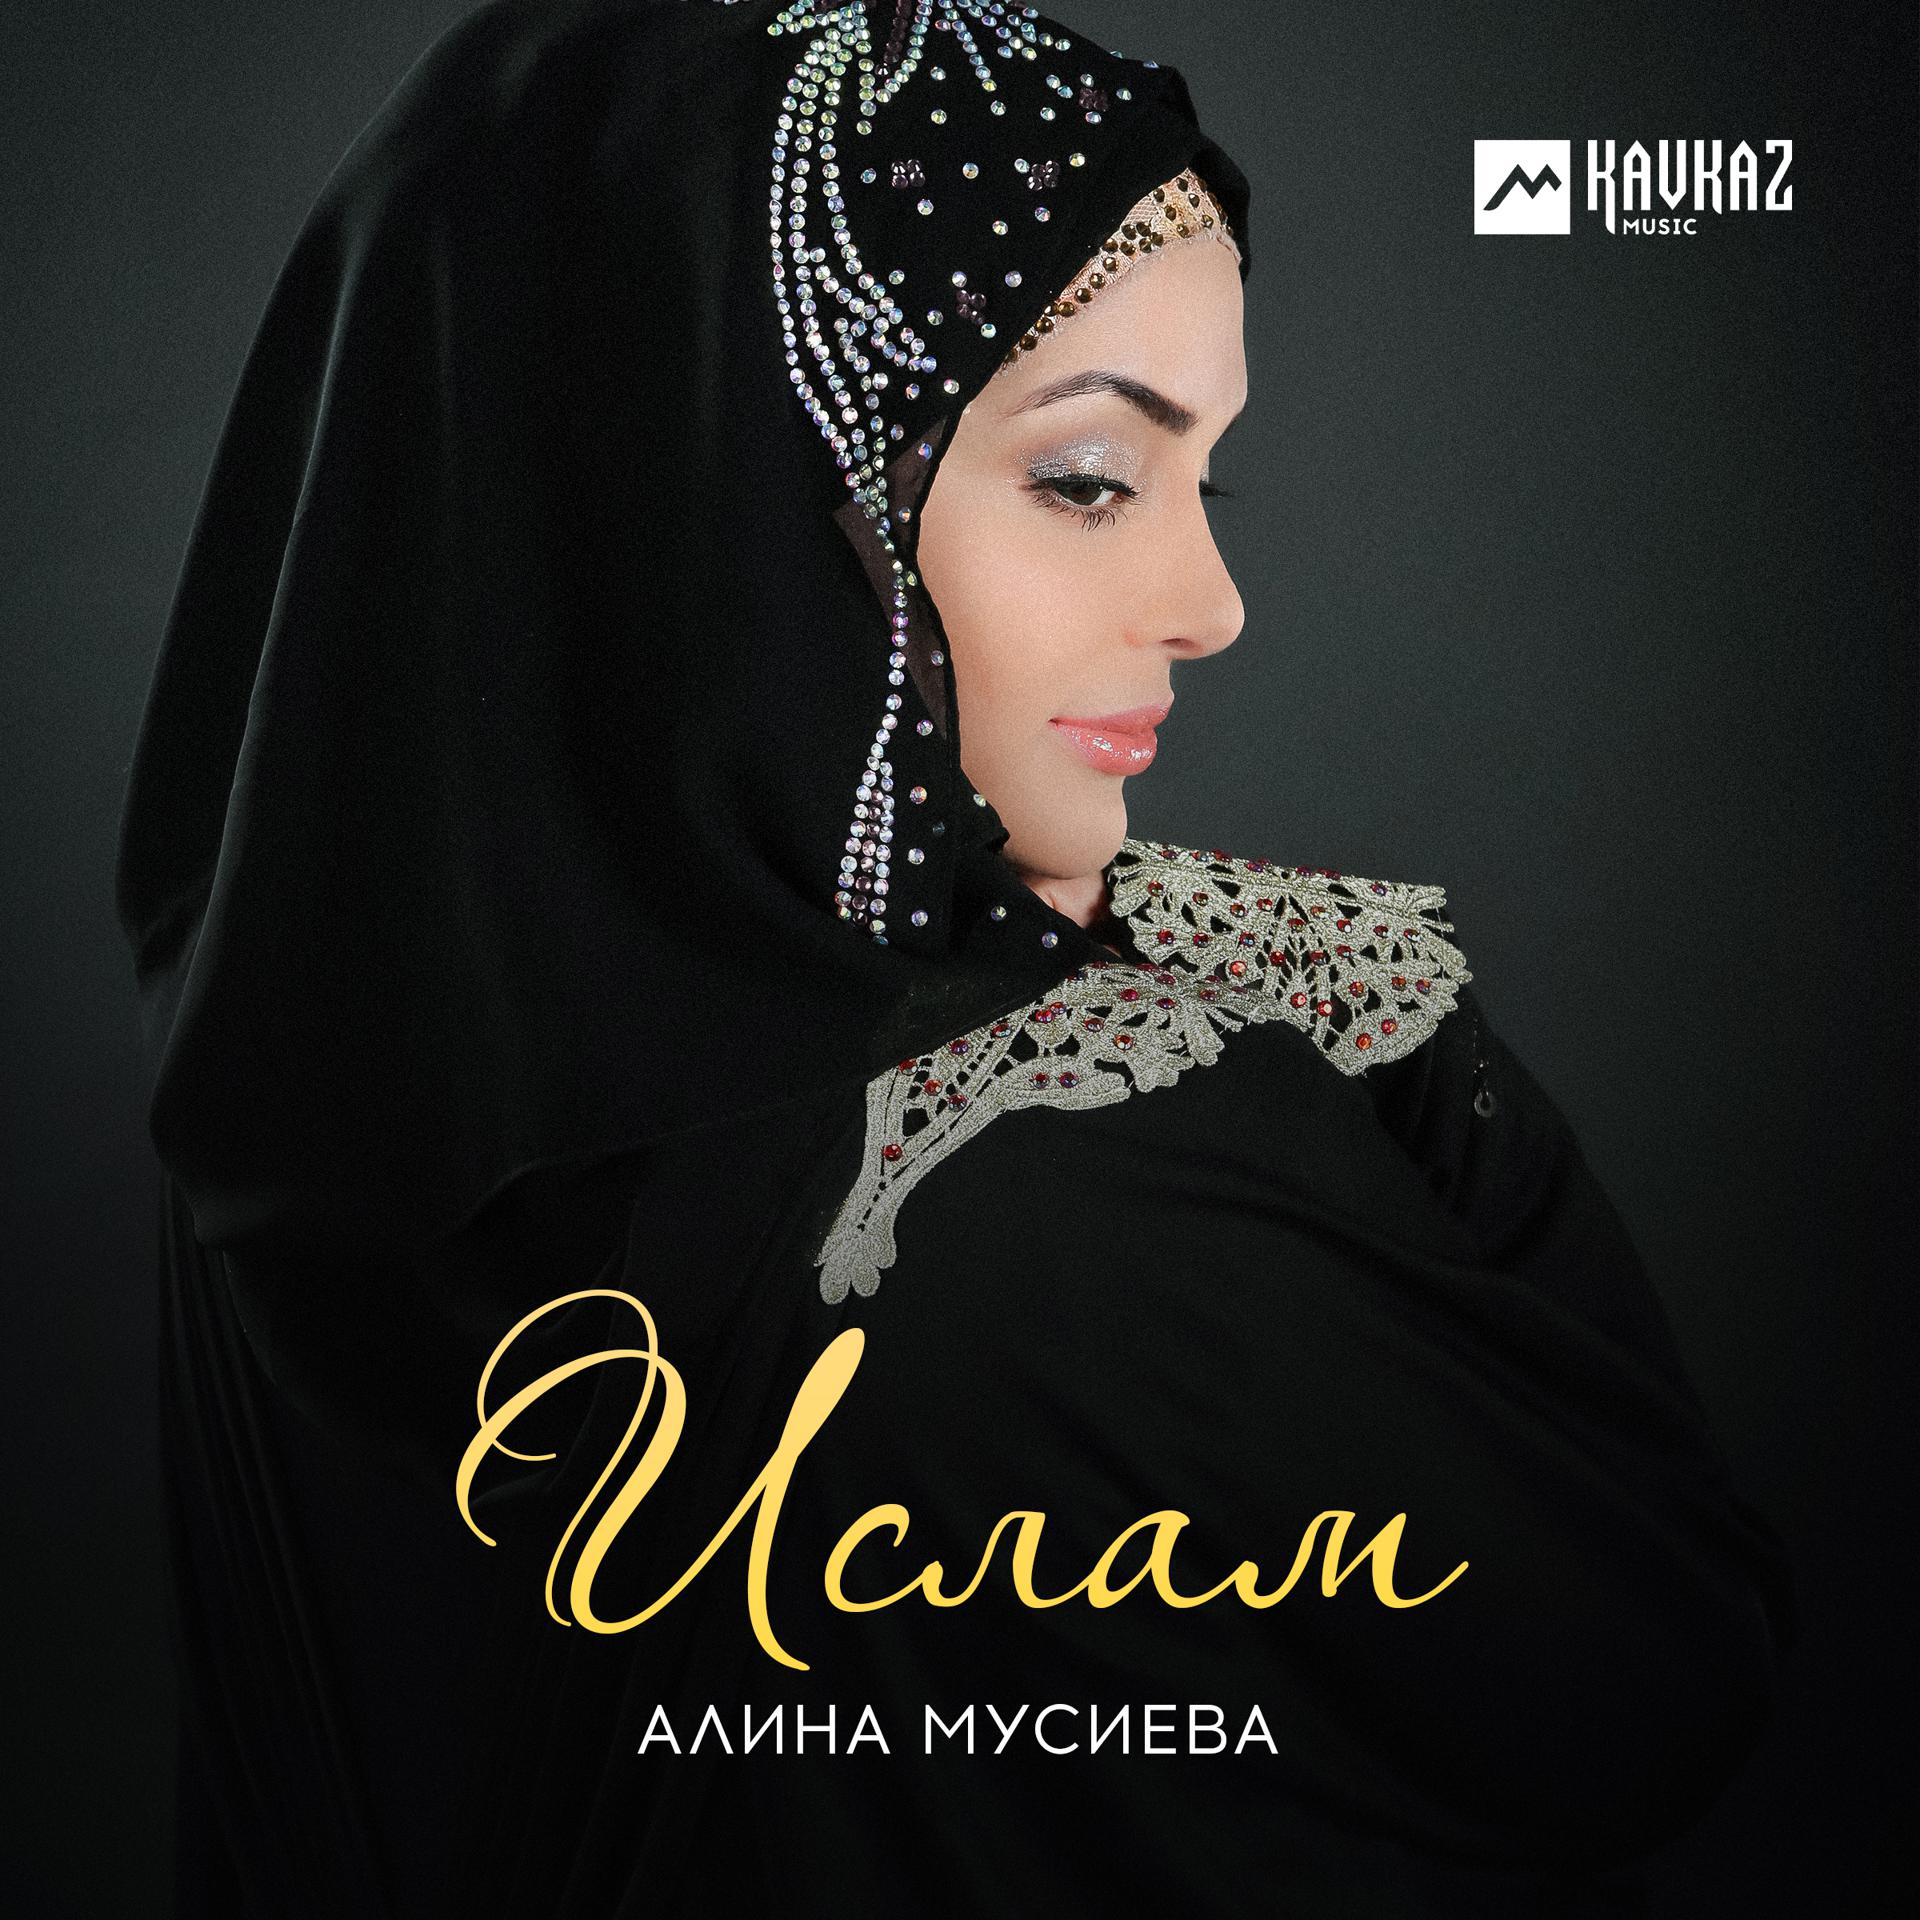 Мусульманские песни слушать. Альбом Ислама.